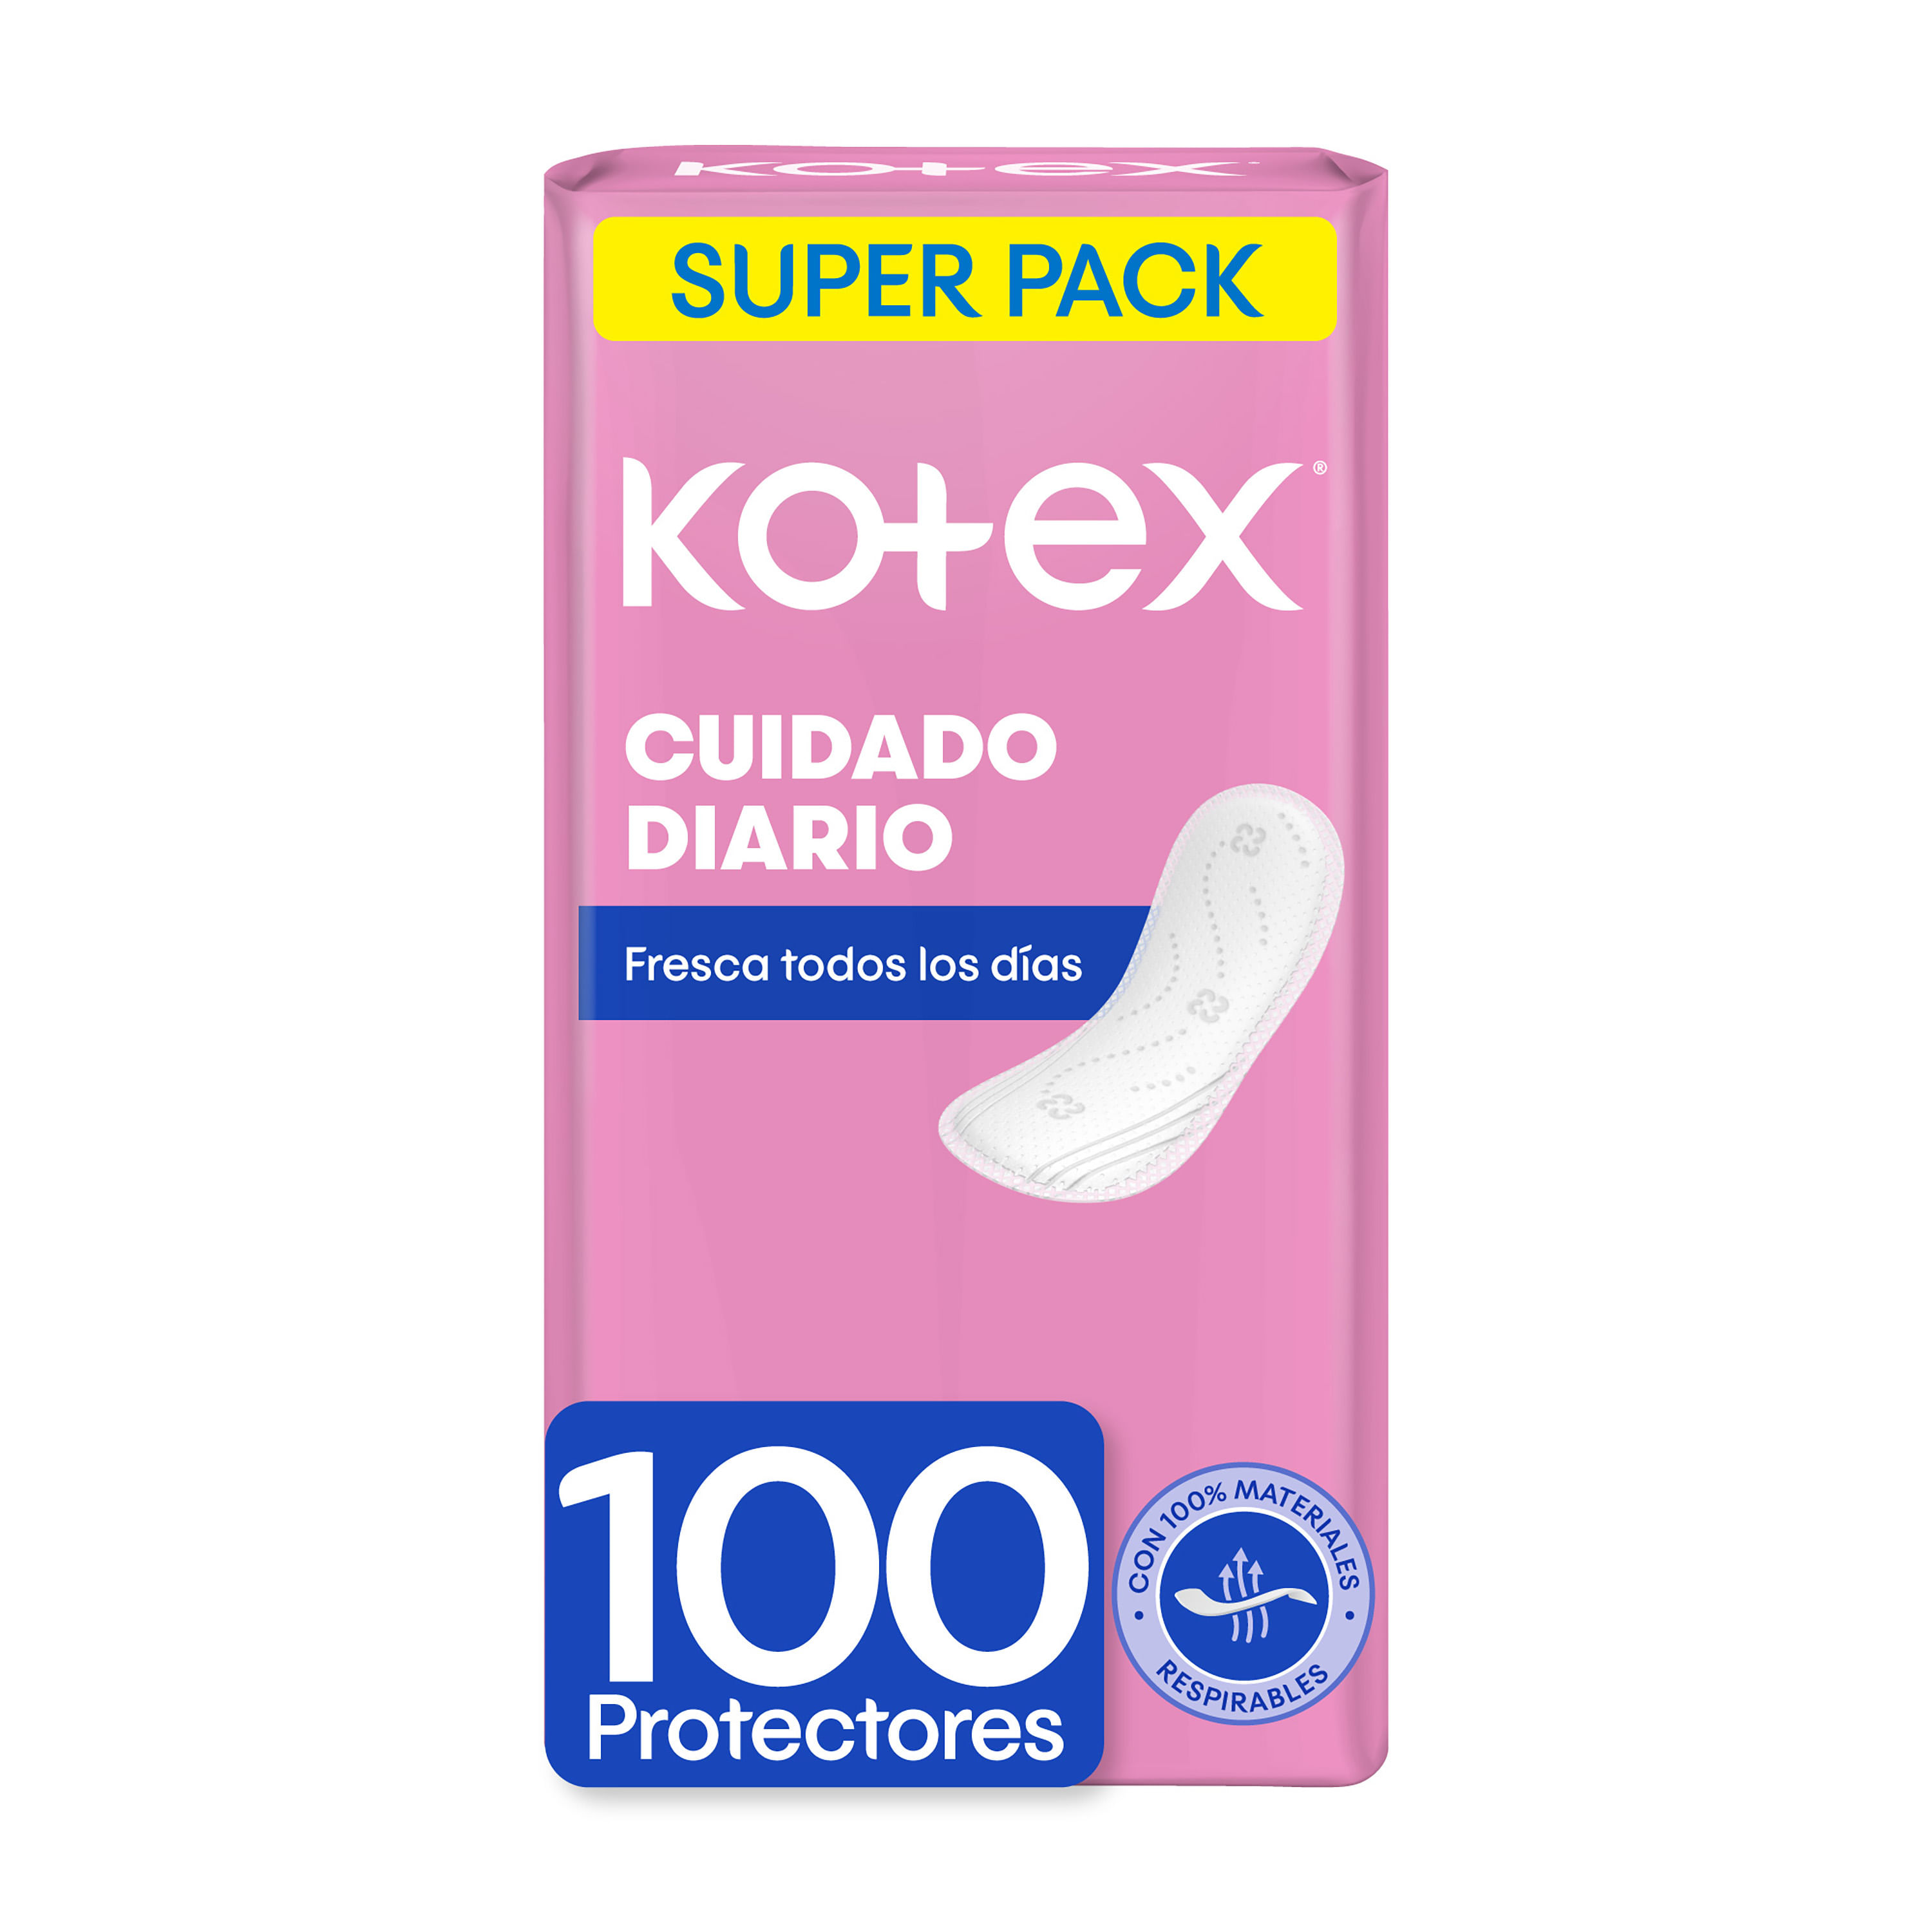 Protectores-Kotex-Cuidado-Diario-Super-Pack-100-Uds-1-24649